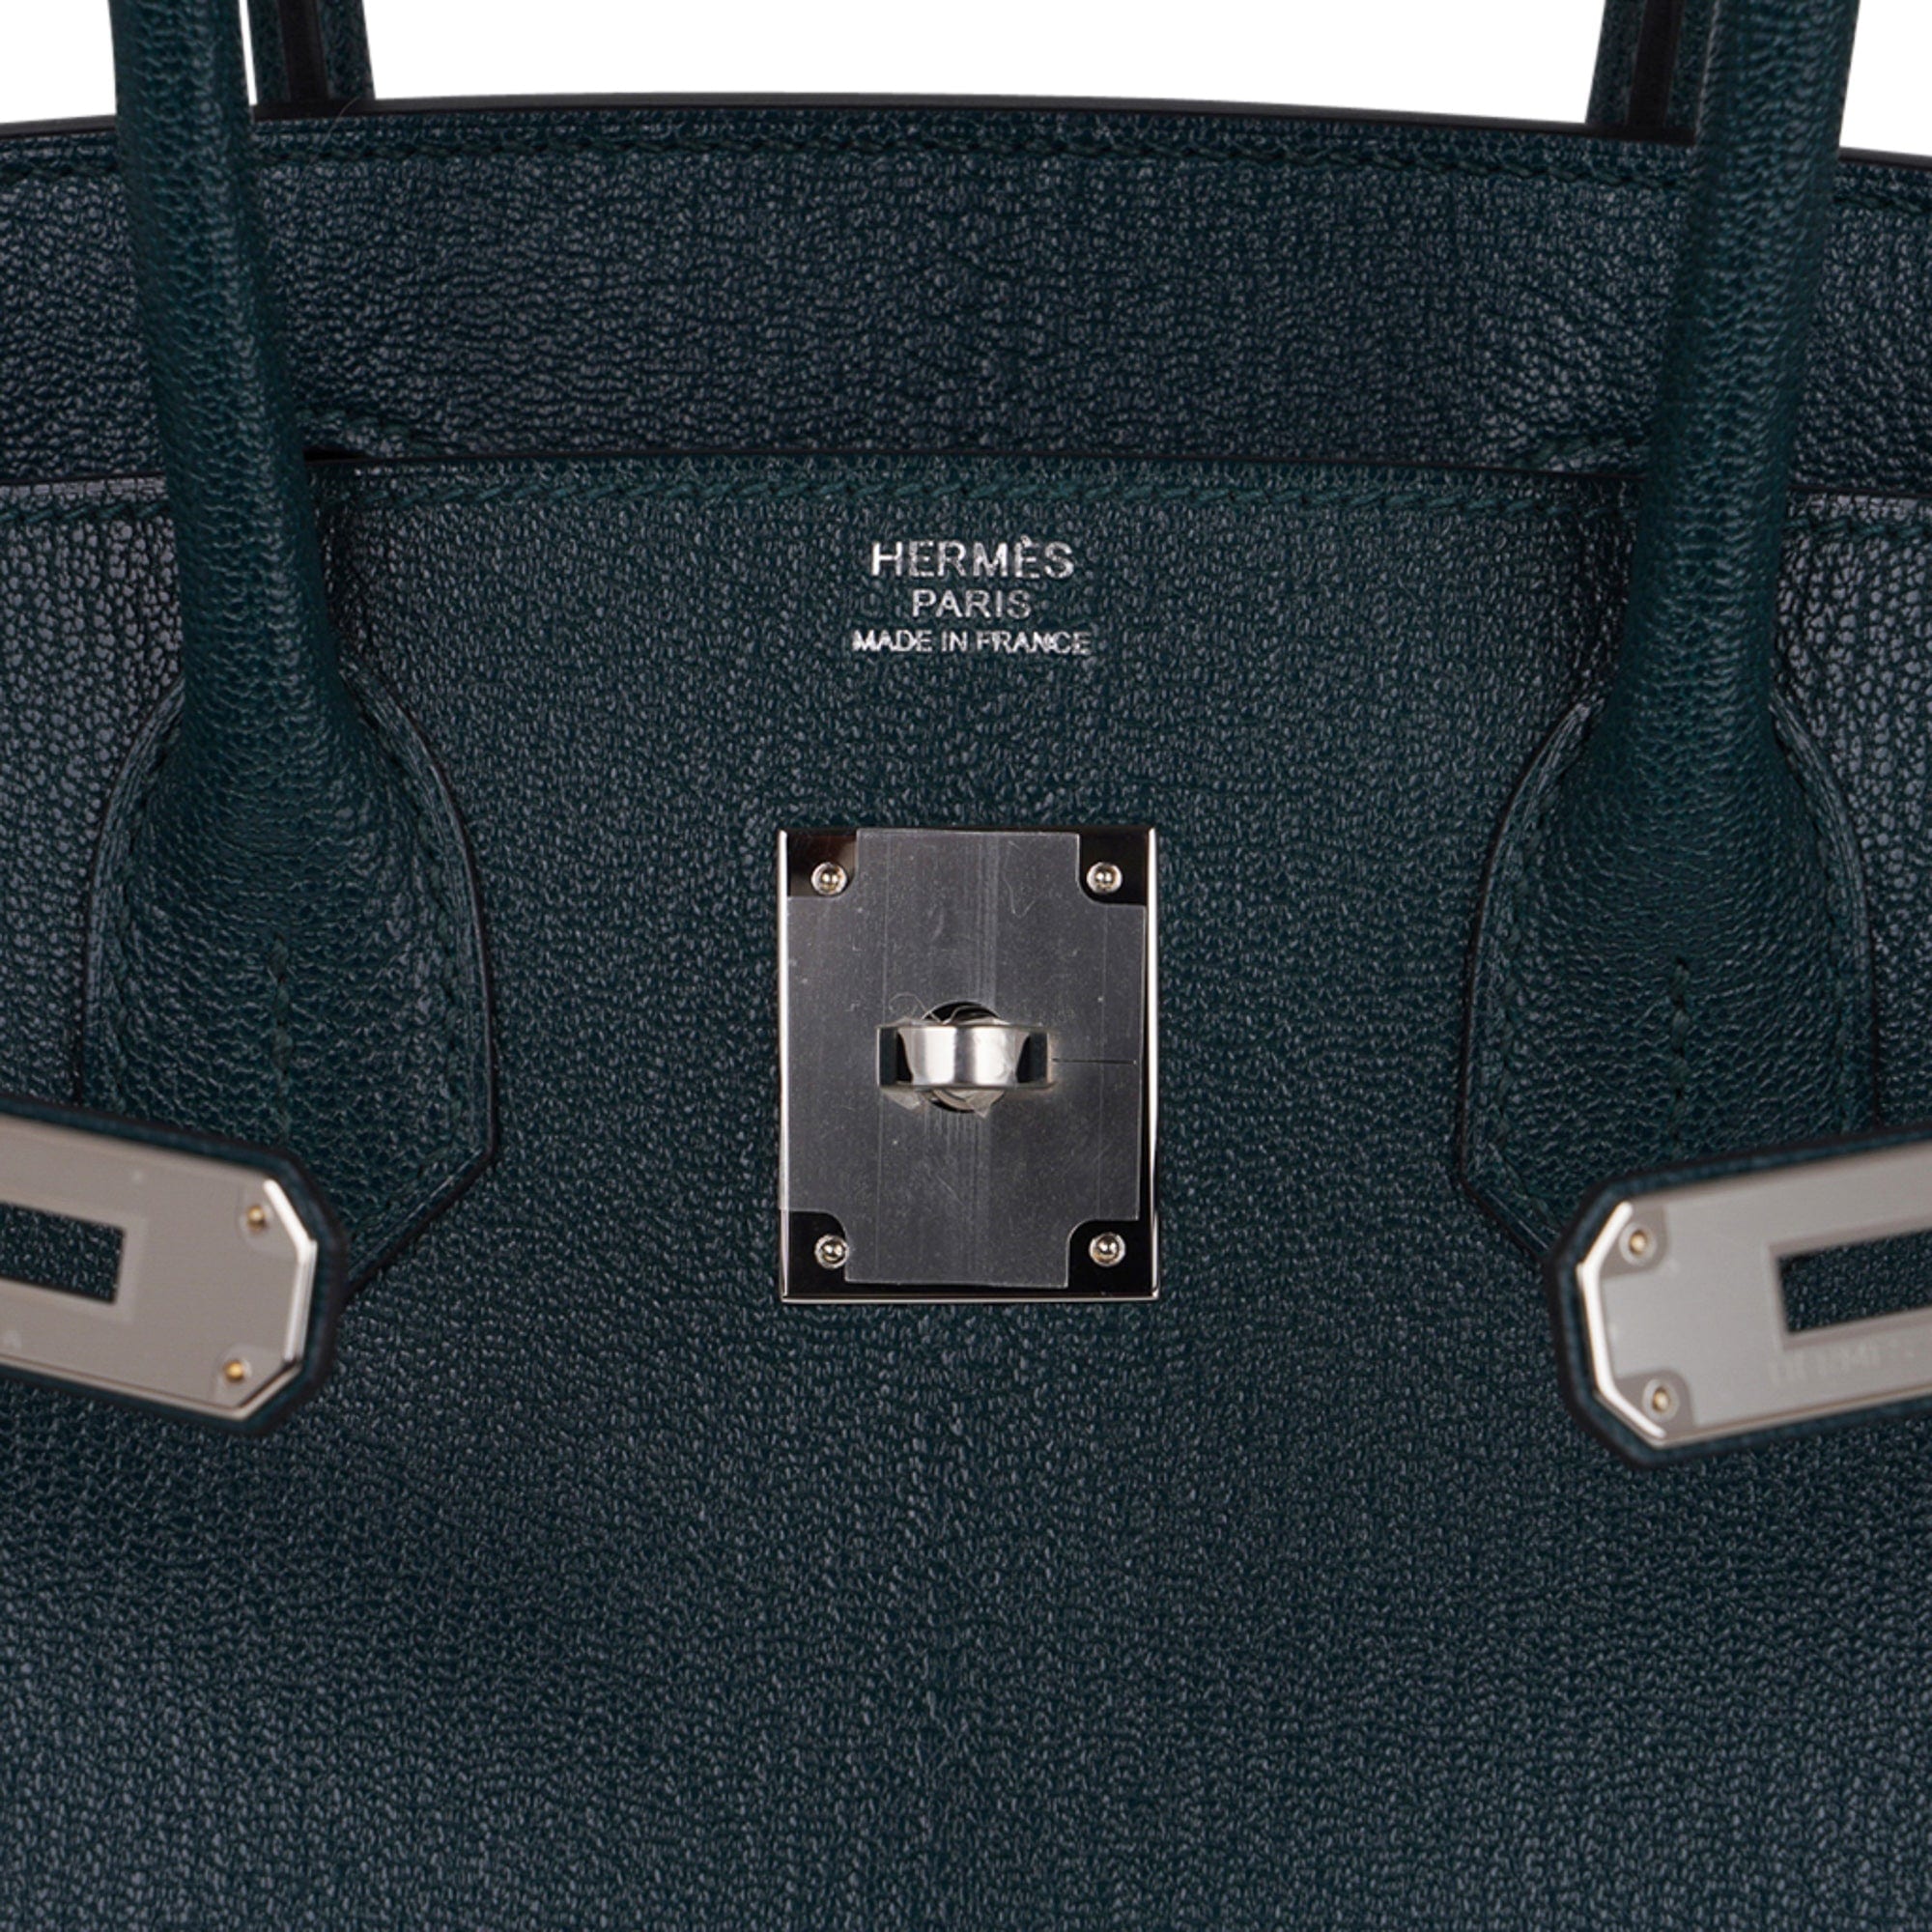 Hermes Birkin 30 Vert Cypress Chevre de Coromandel PHW Handbag, 2021